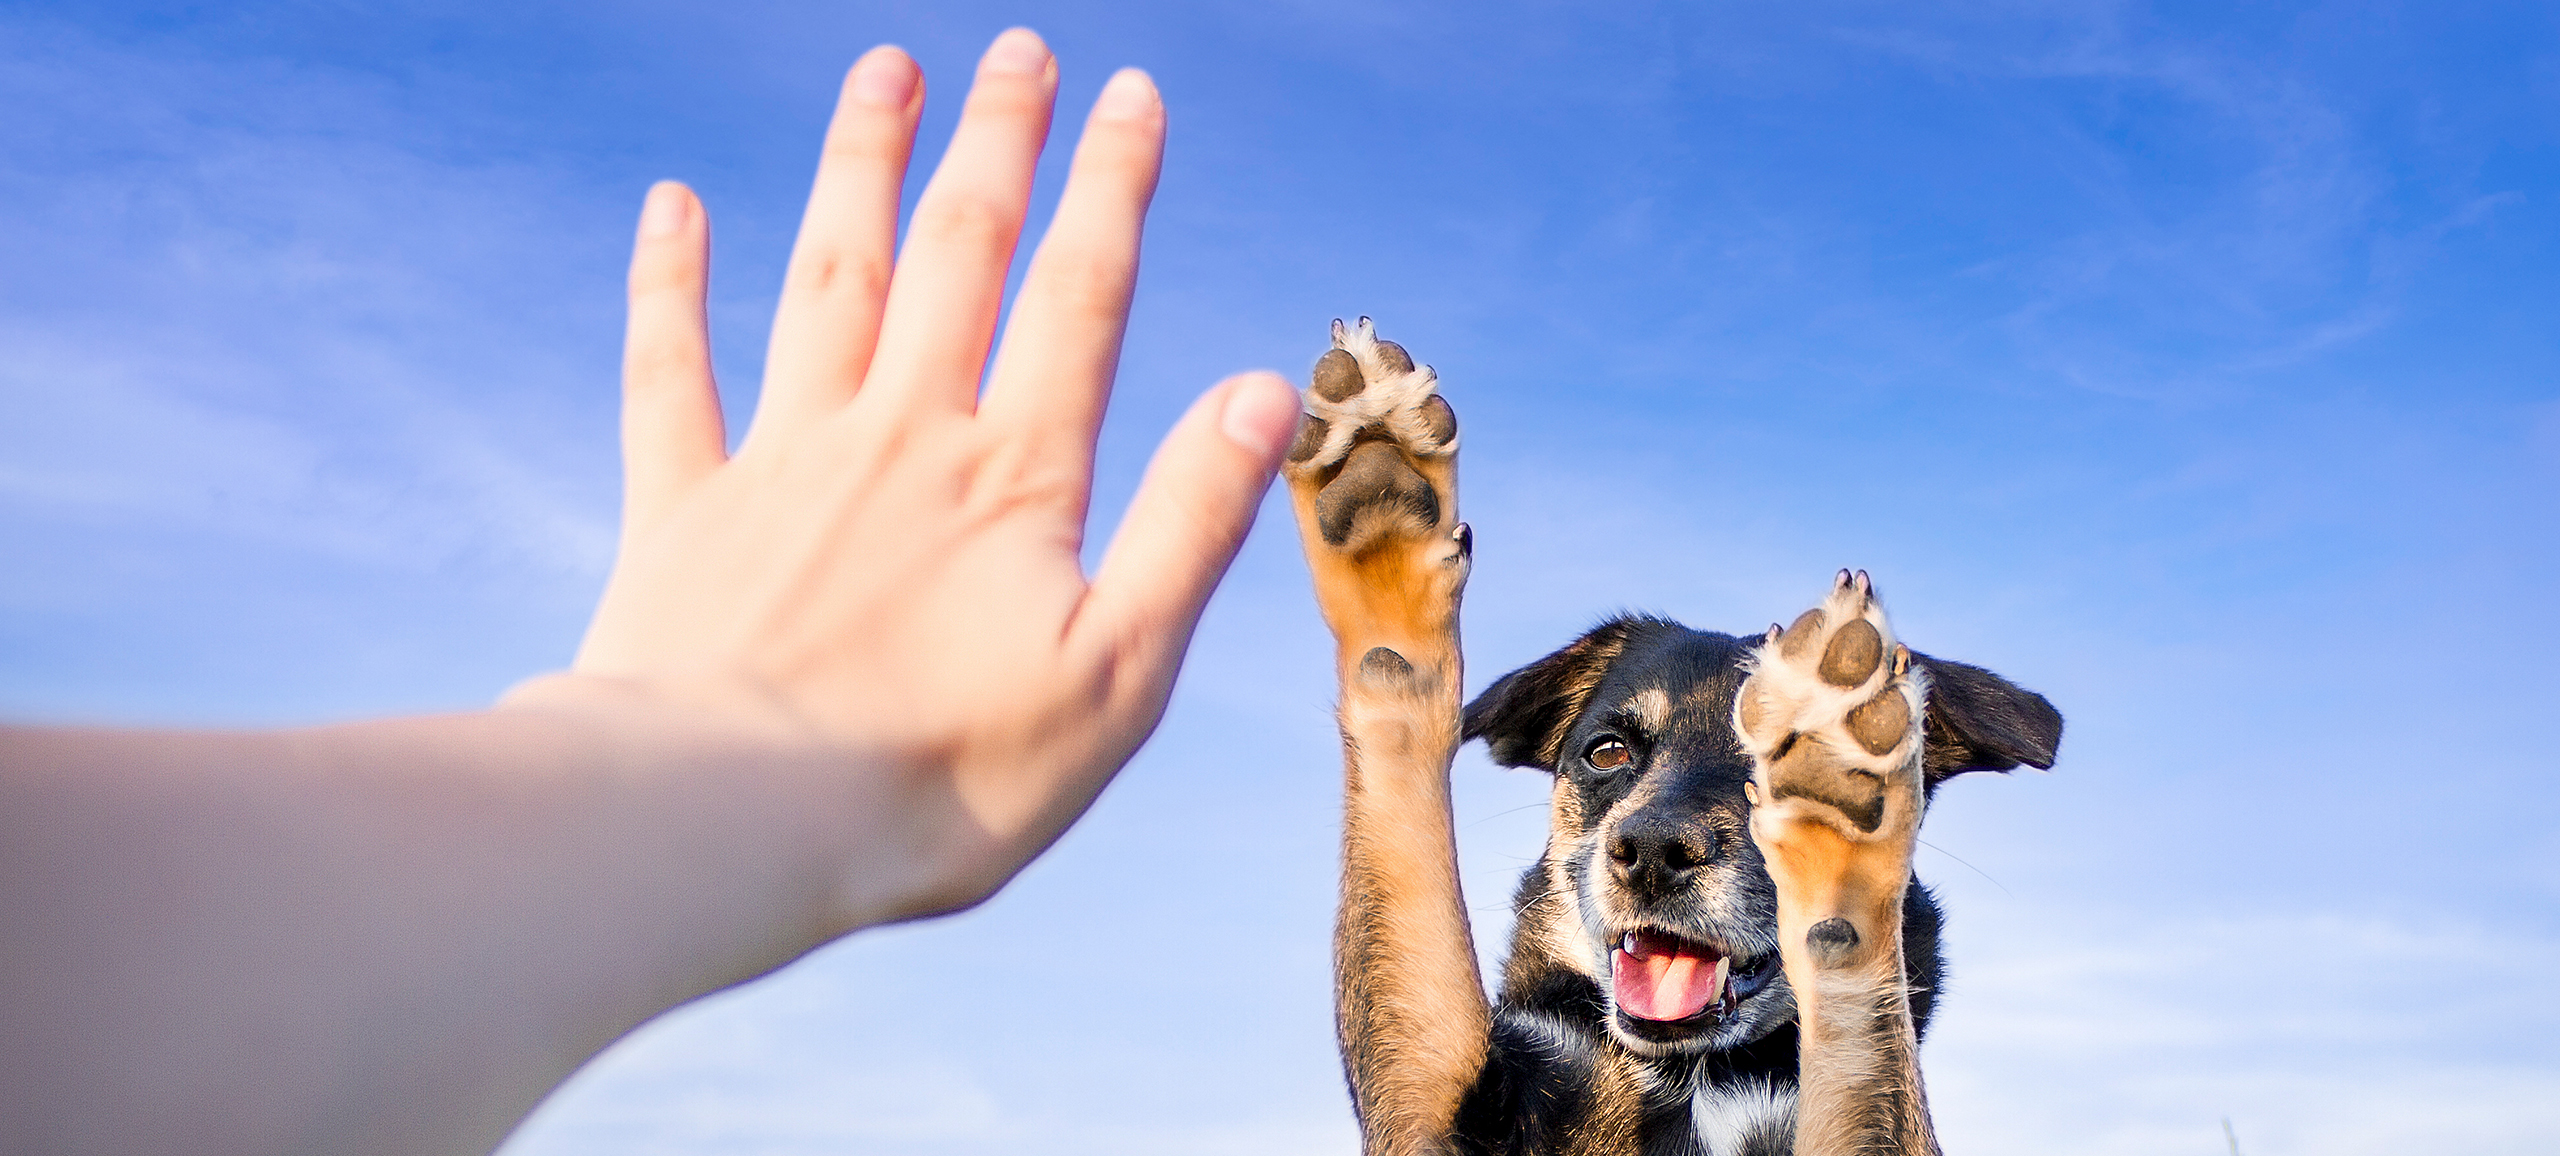 Ein Mensch und ein Mischlingshund geben sich ein doppeltes High-Five. Beide befinden sich draußen vor einem blauen Himmel.